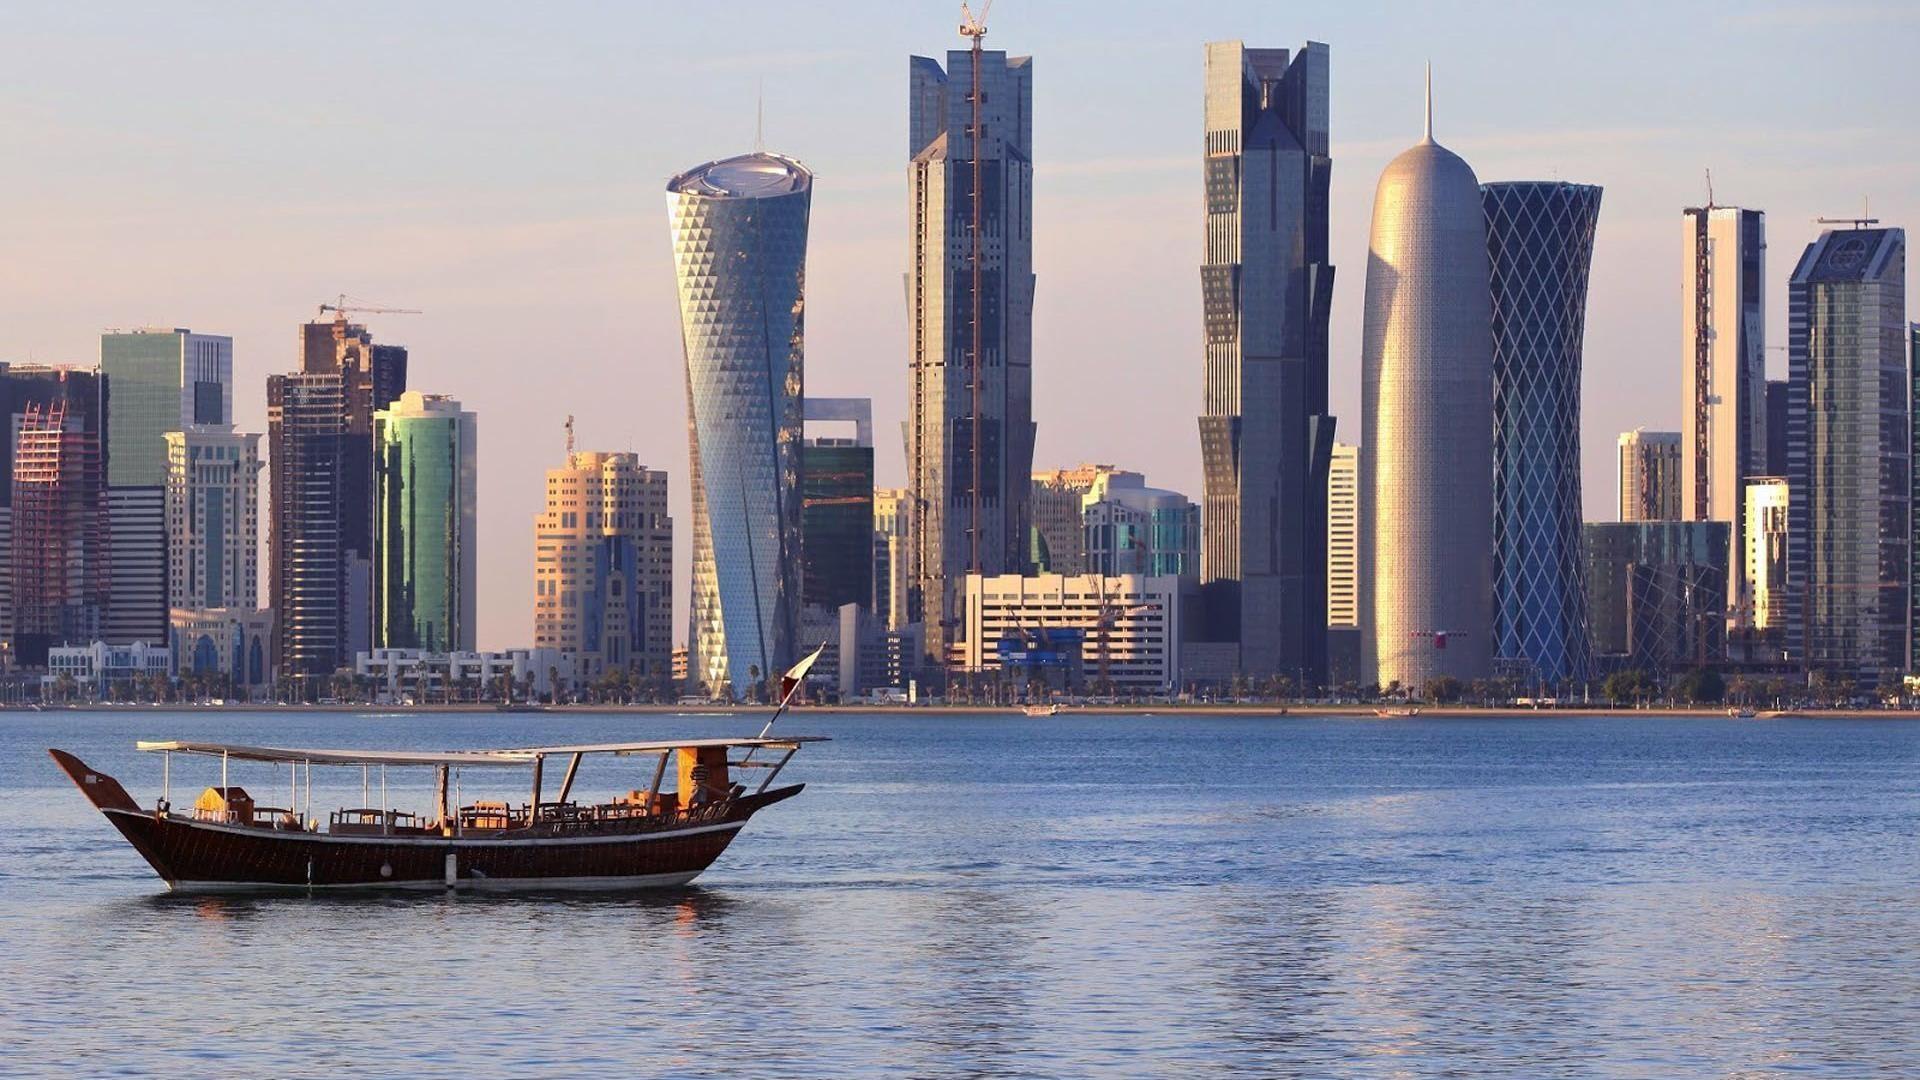 Doha Skyline Wallpapers sẽ khiến bạn có những giây phút thư giãn tuyệt vời, để tìm lại sự bình yên bên trong. Thành phố Doha được chụp lại theo những góc cạnh khác nhau, từ tận cùng xích đạo cho đến các tòa nhà cao tầng cực kỳ ấn tượng!